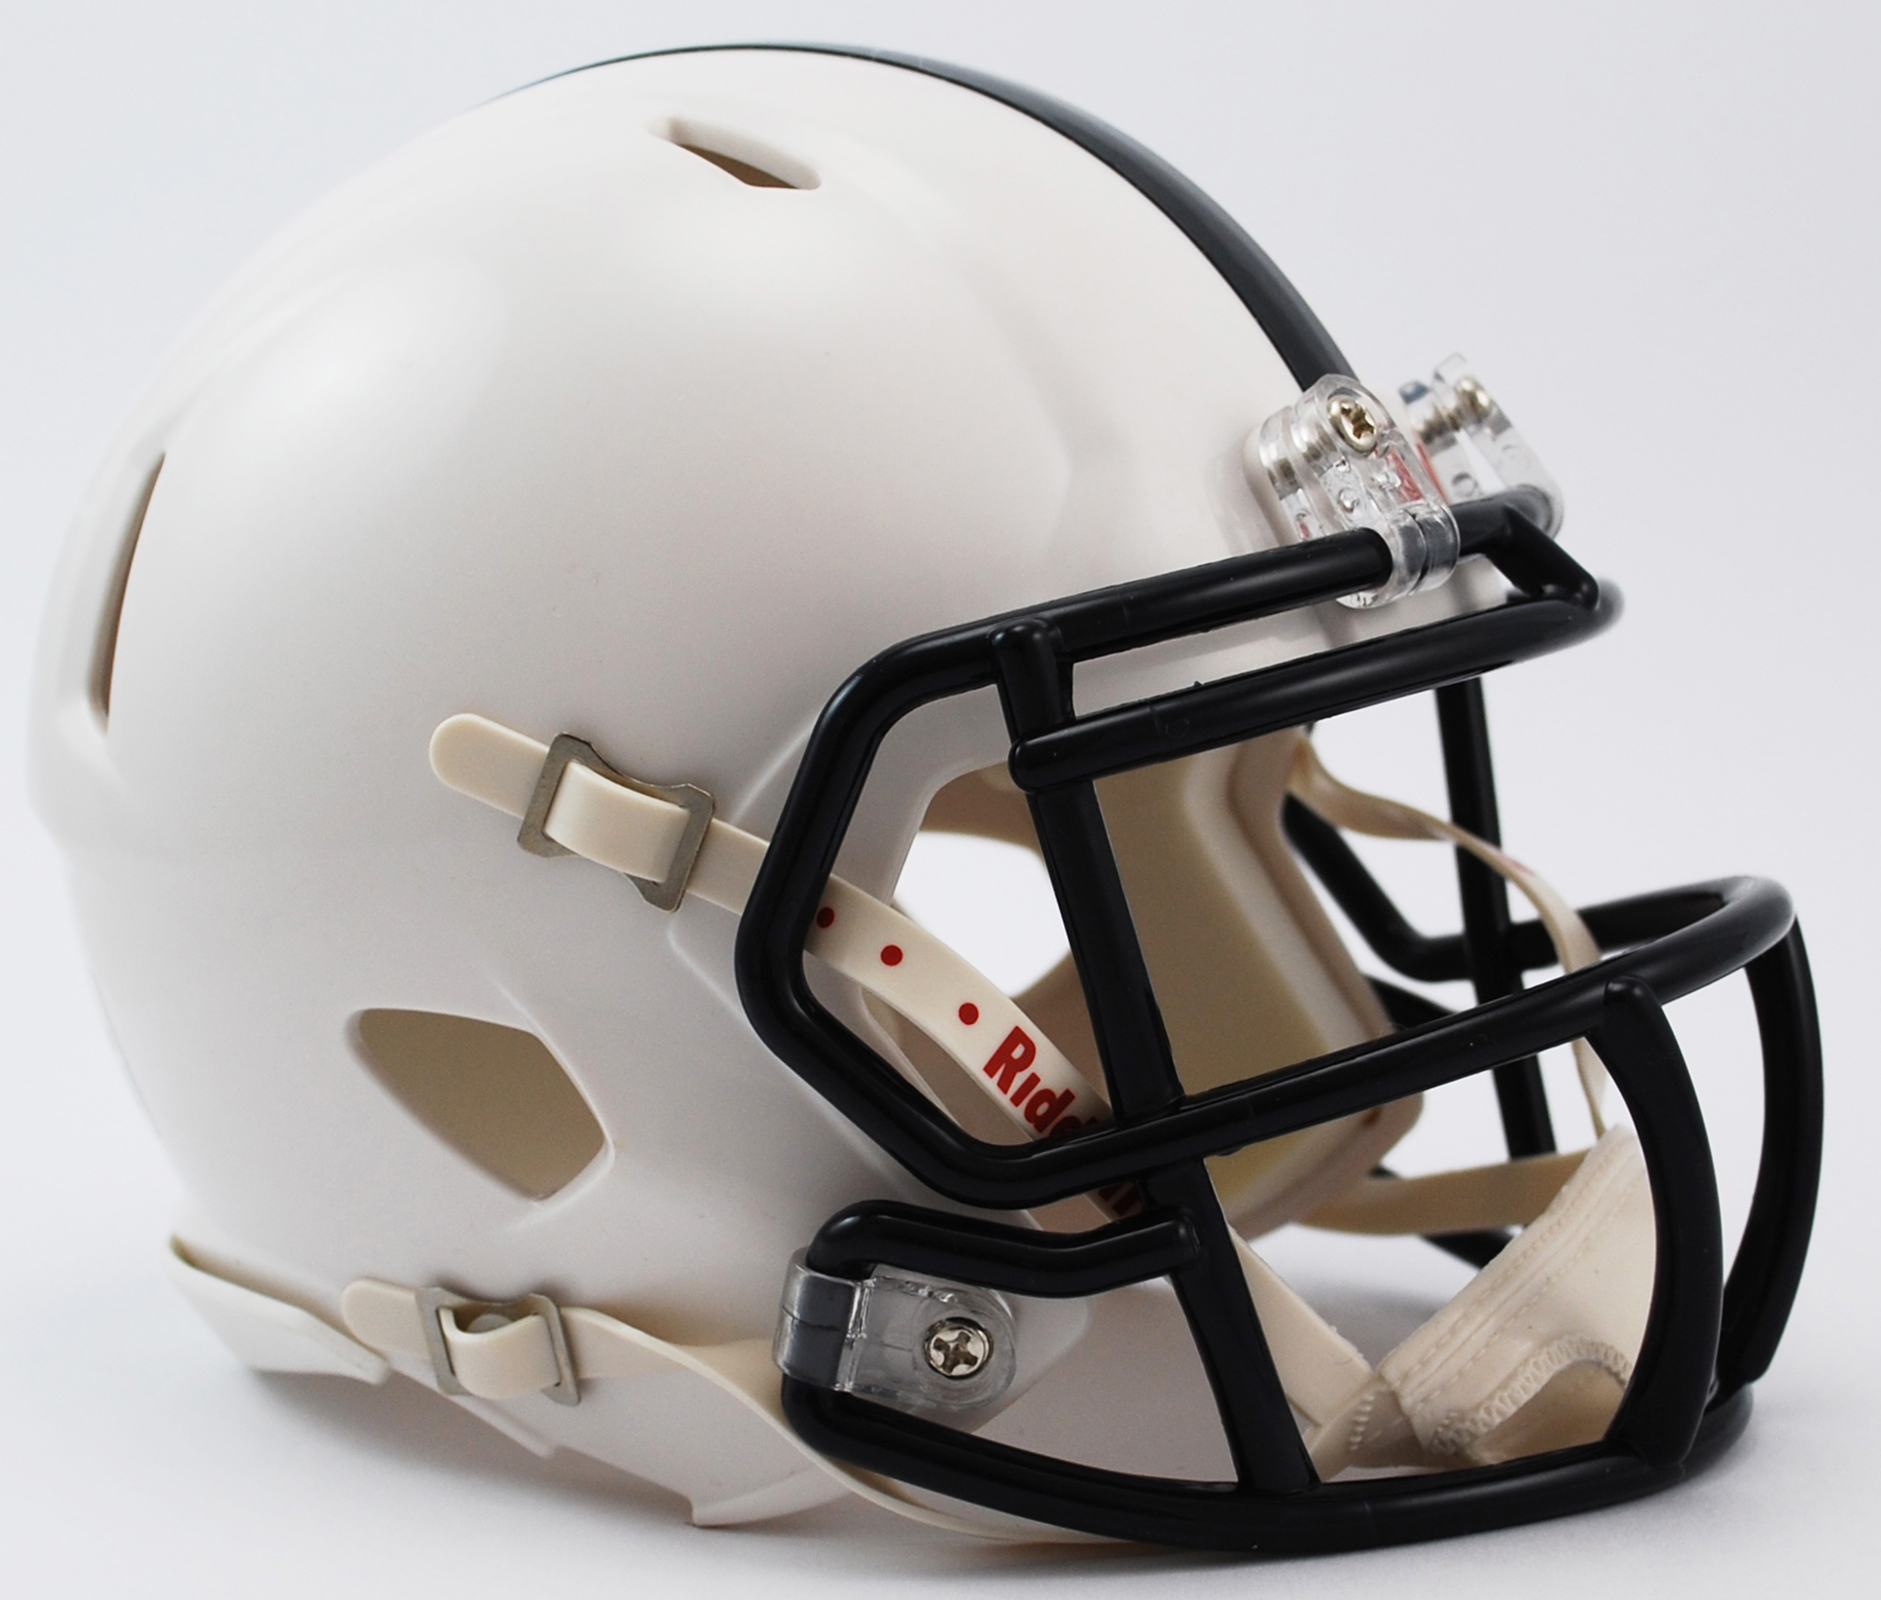 Riddell Penn State Speed Mini Helmet